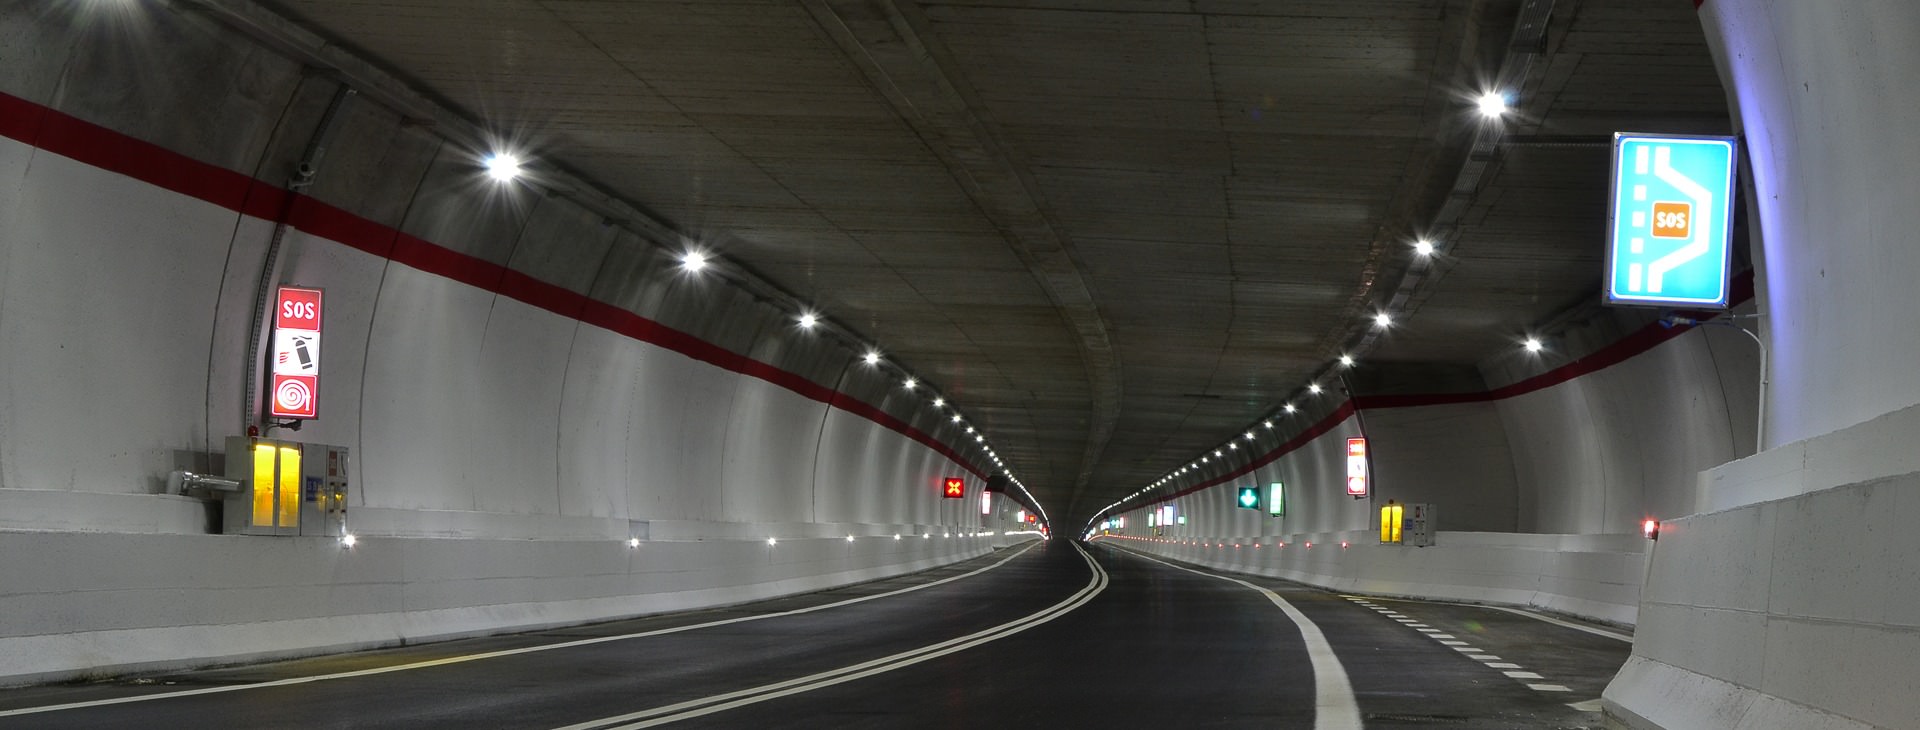 Tunnels - bruggen - onderdoorgangen